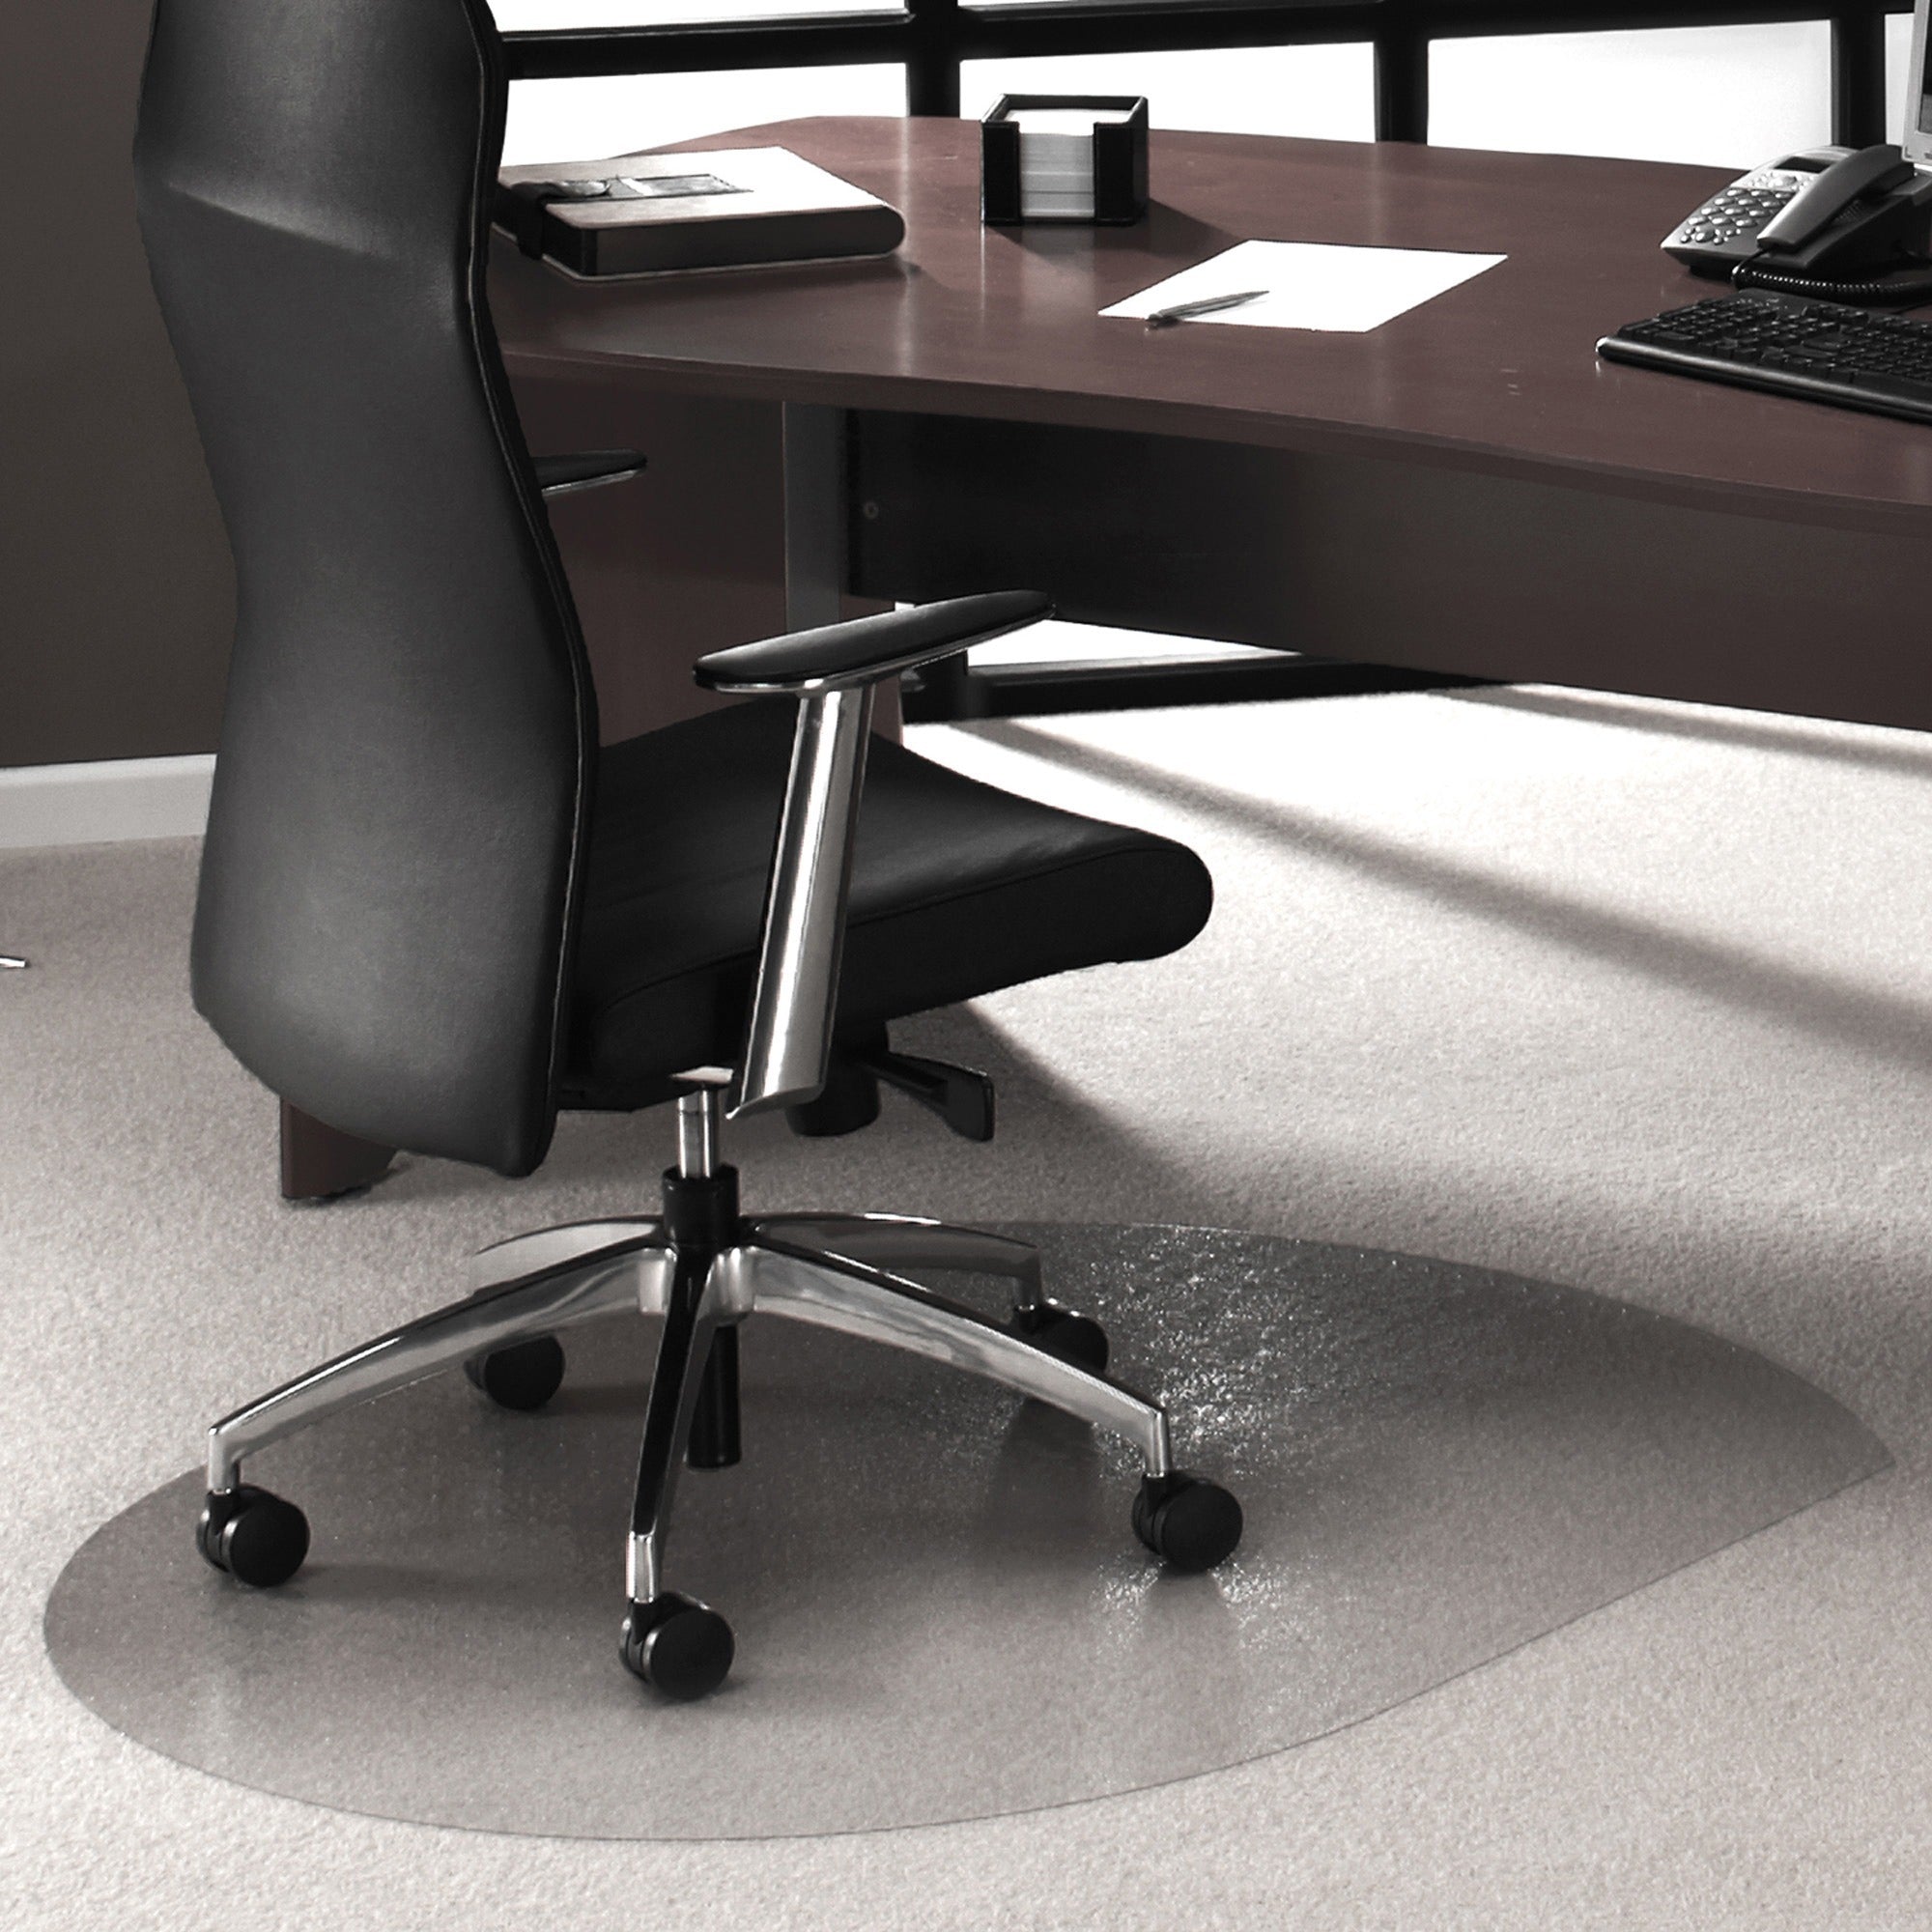 Ultimat Polycarbonate Contoured Chair Mat for Carpets up to 1/2" - 39 x 49" - Clear Contoured Polycarbonate Chair Mat For Carpets - 49" L x 39" W x 0.085" D - 